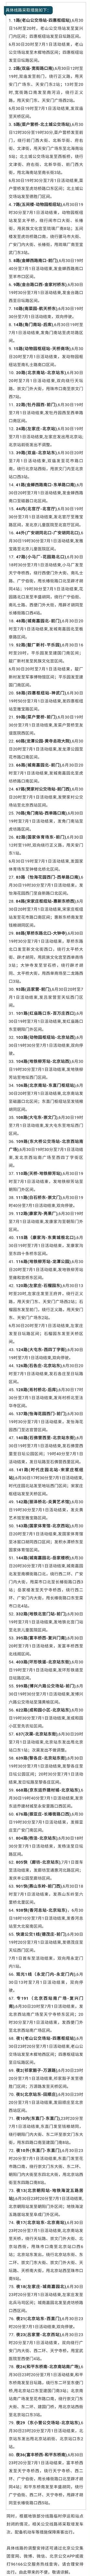 80条公交线路将调整运营！6月30日至7月1日北京公交线路出行提示